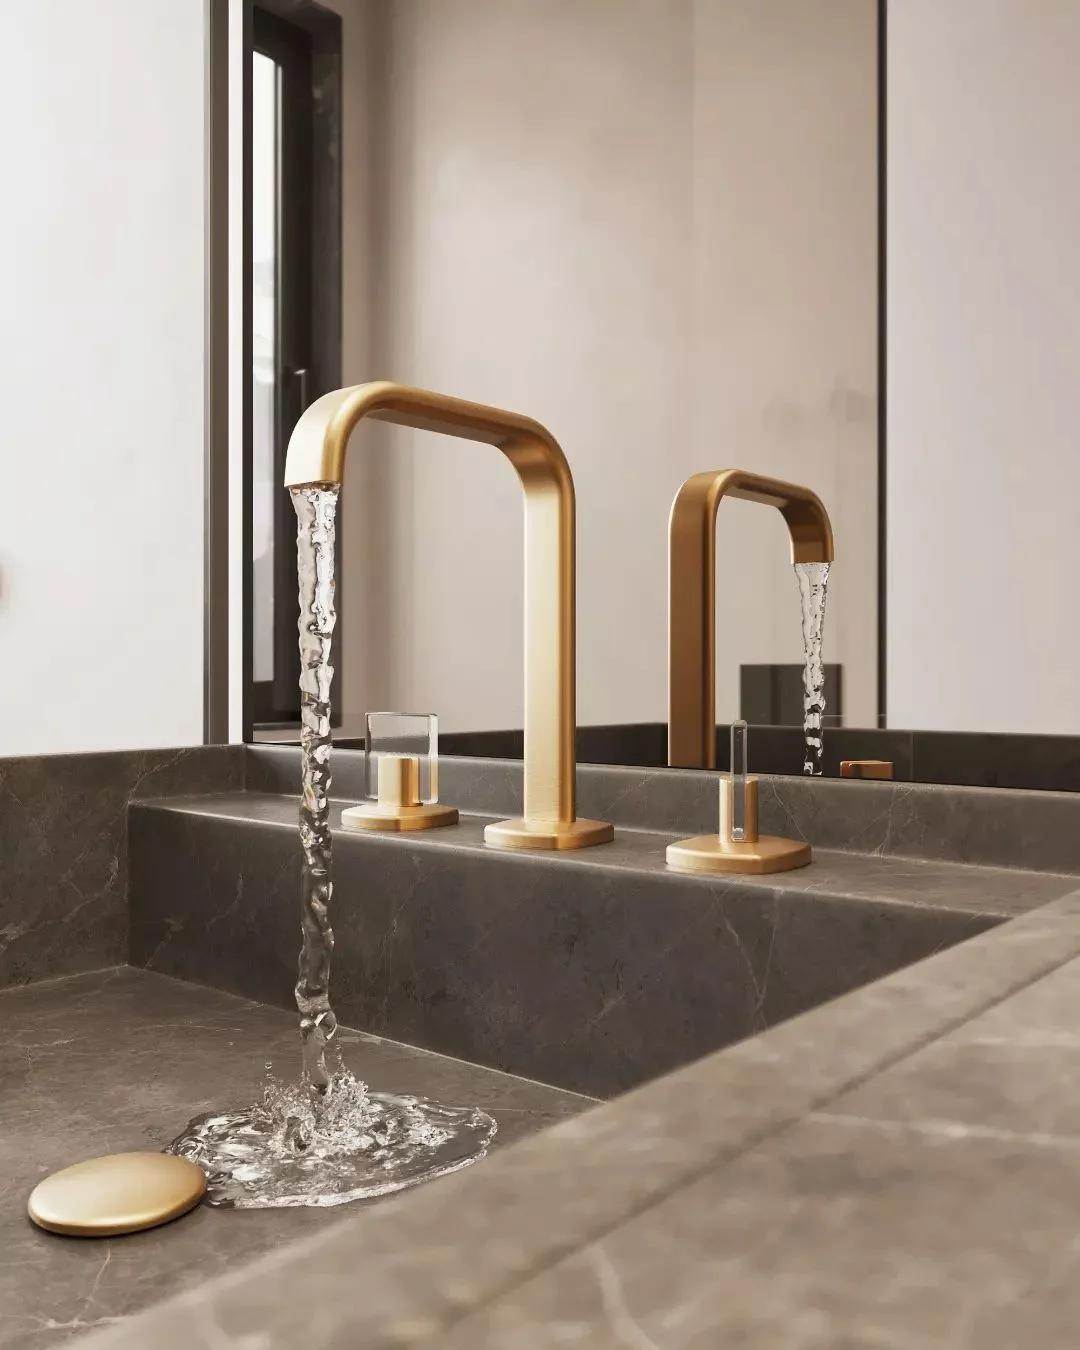 Bath - gold faucet